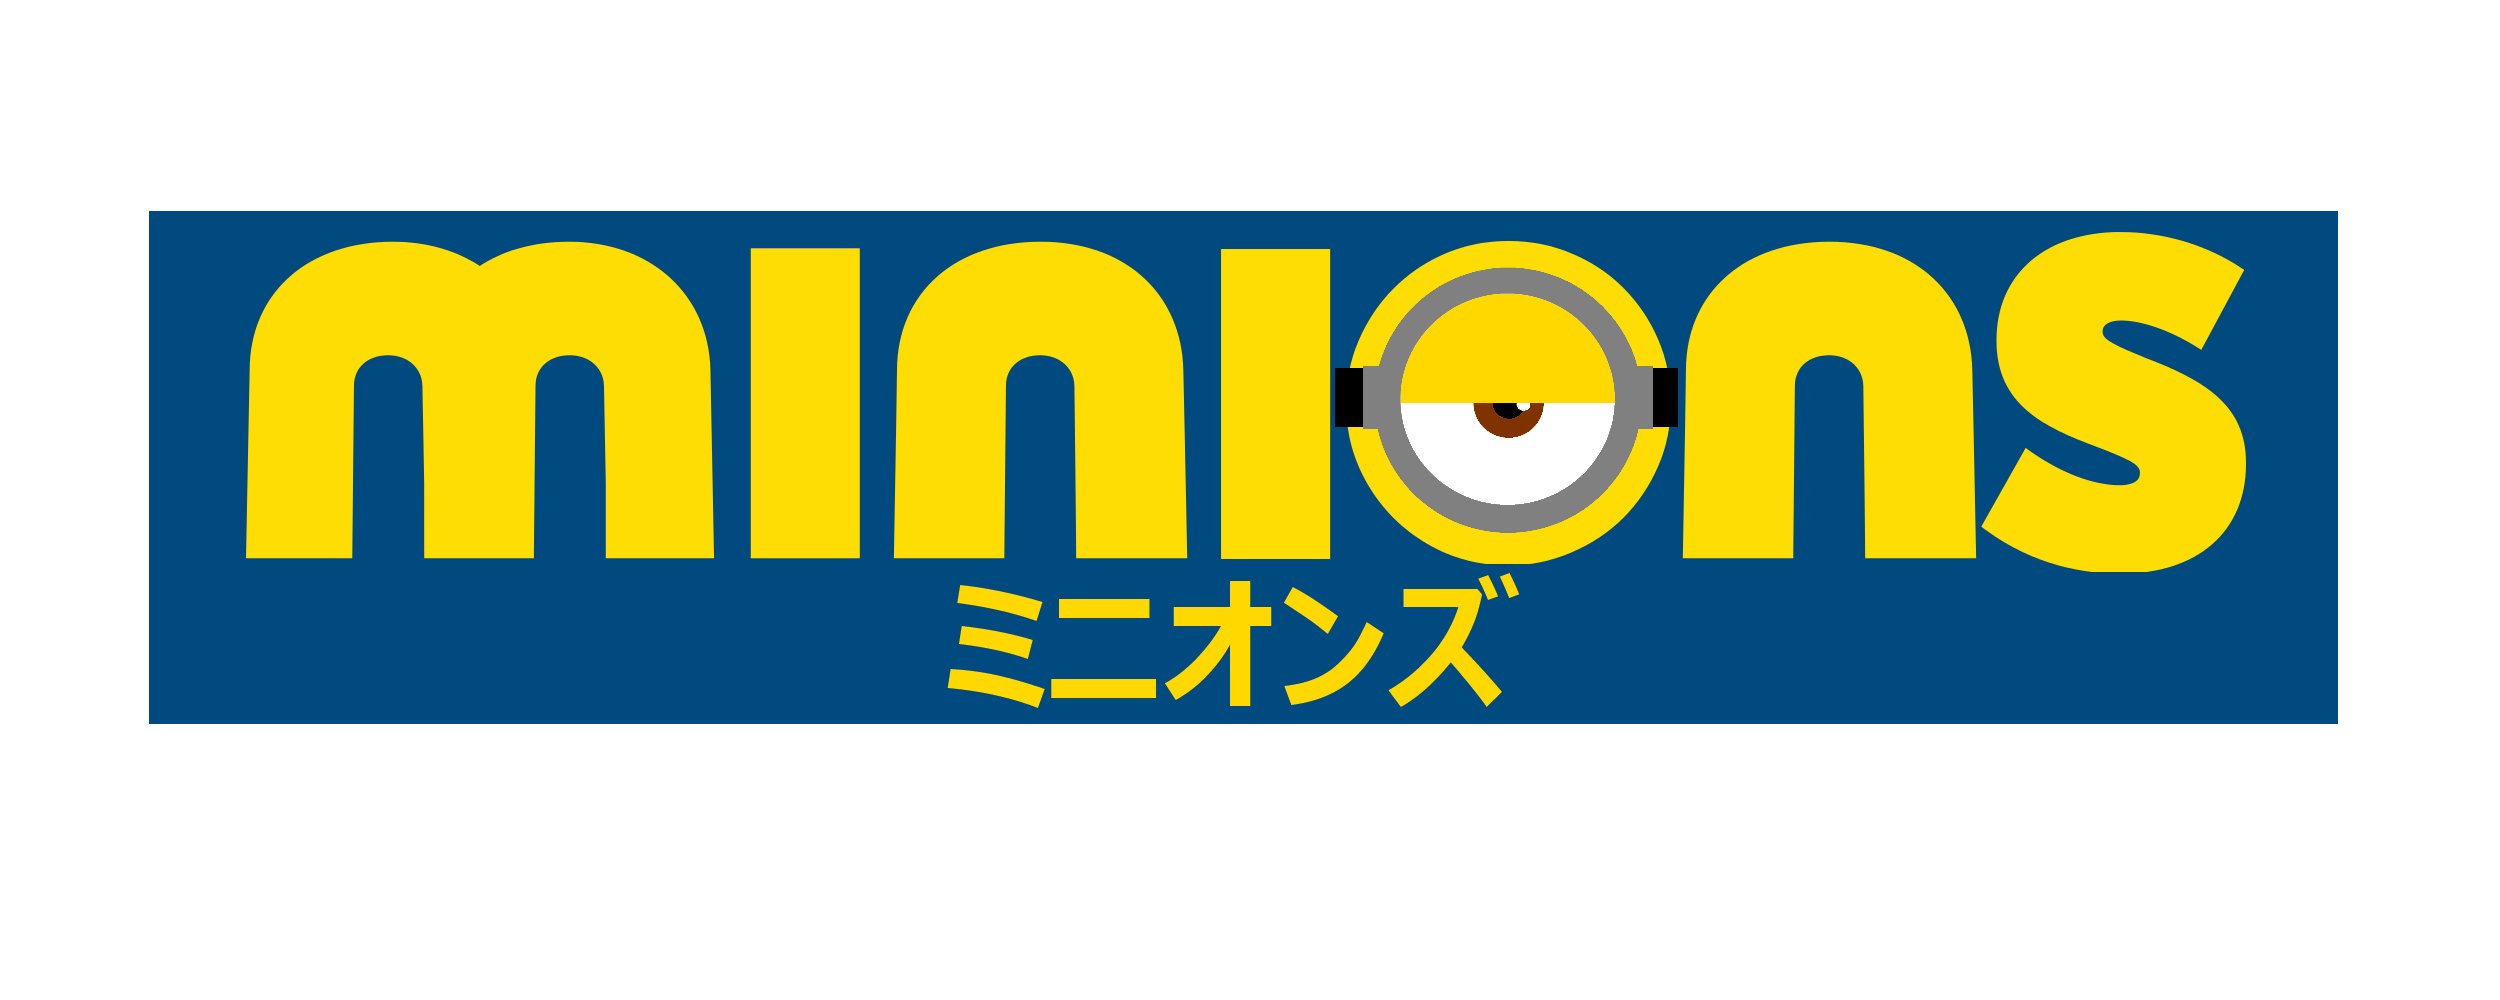 Minion Logo - Minion Logos